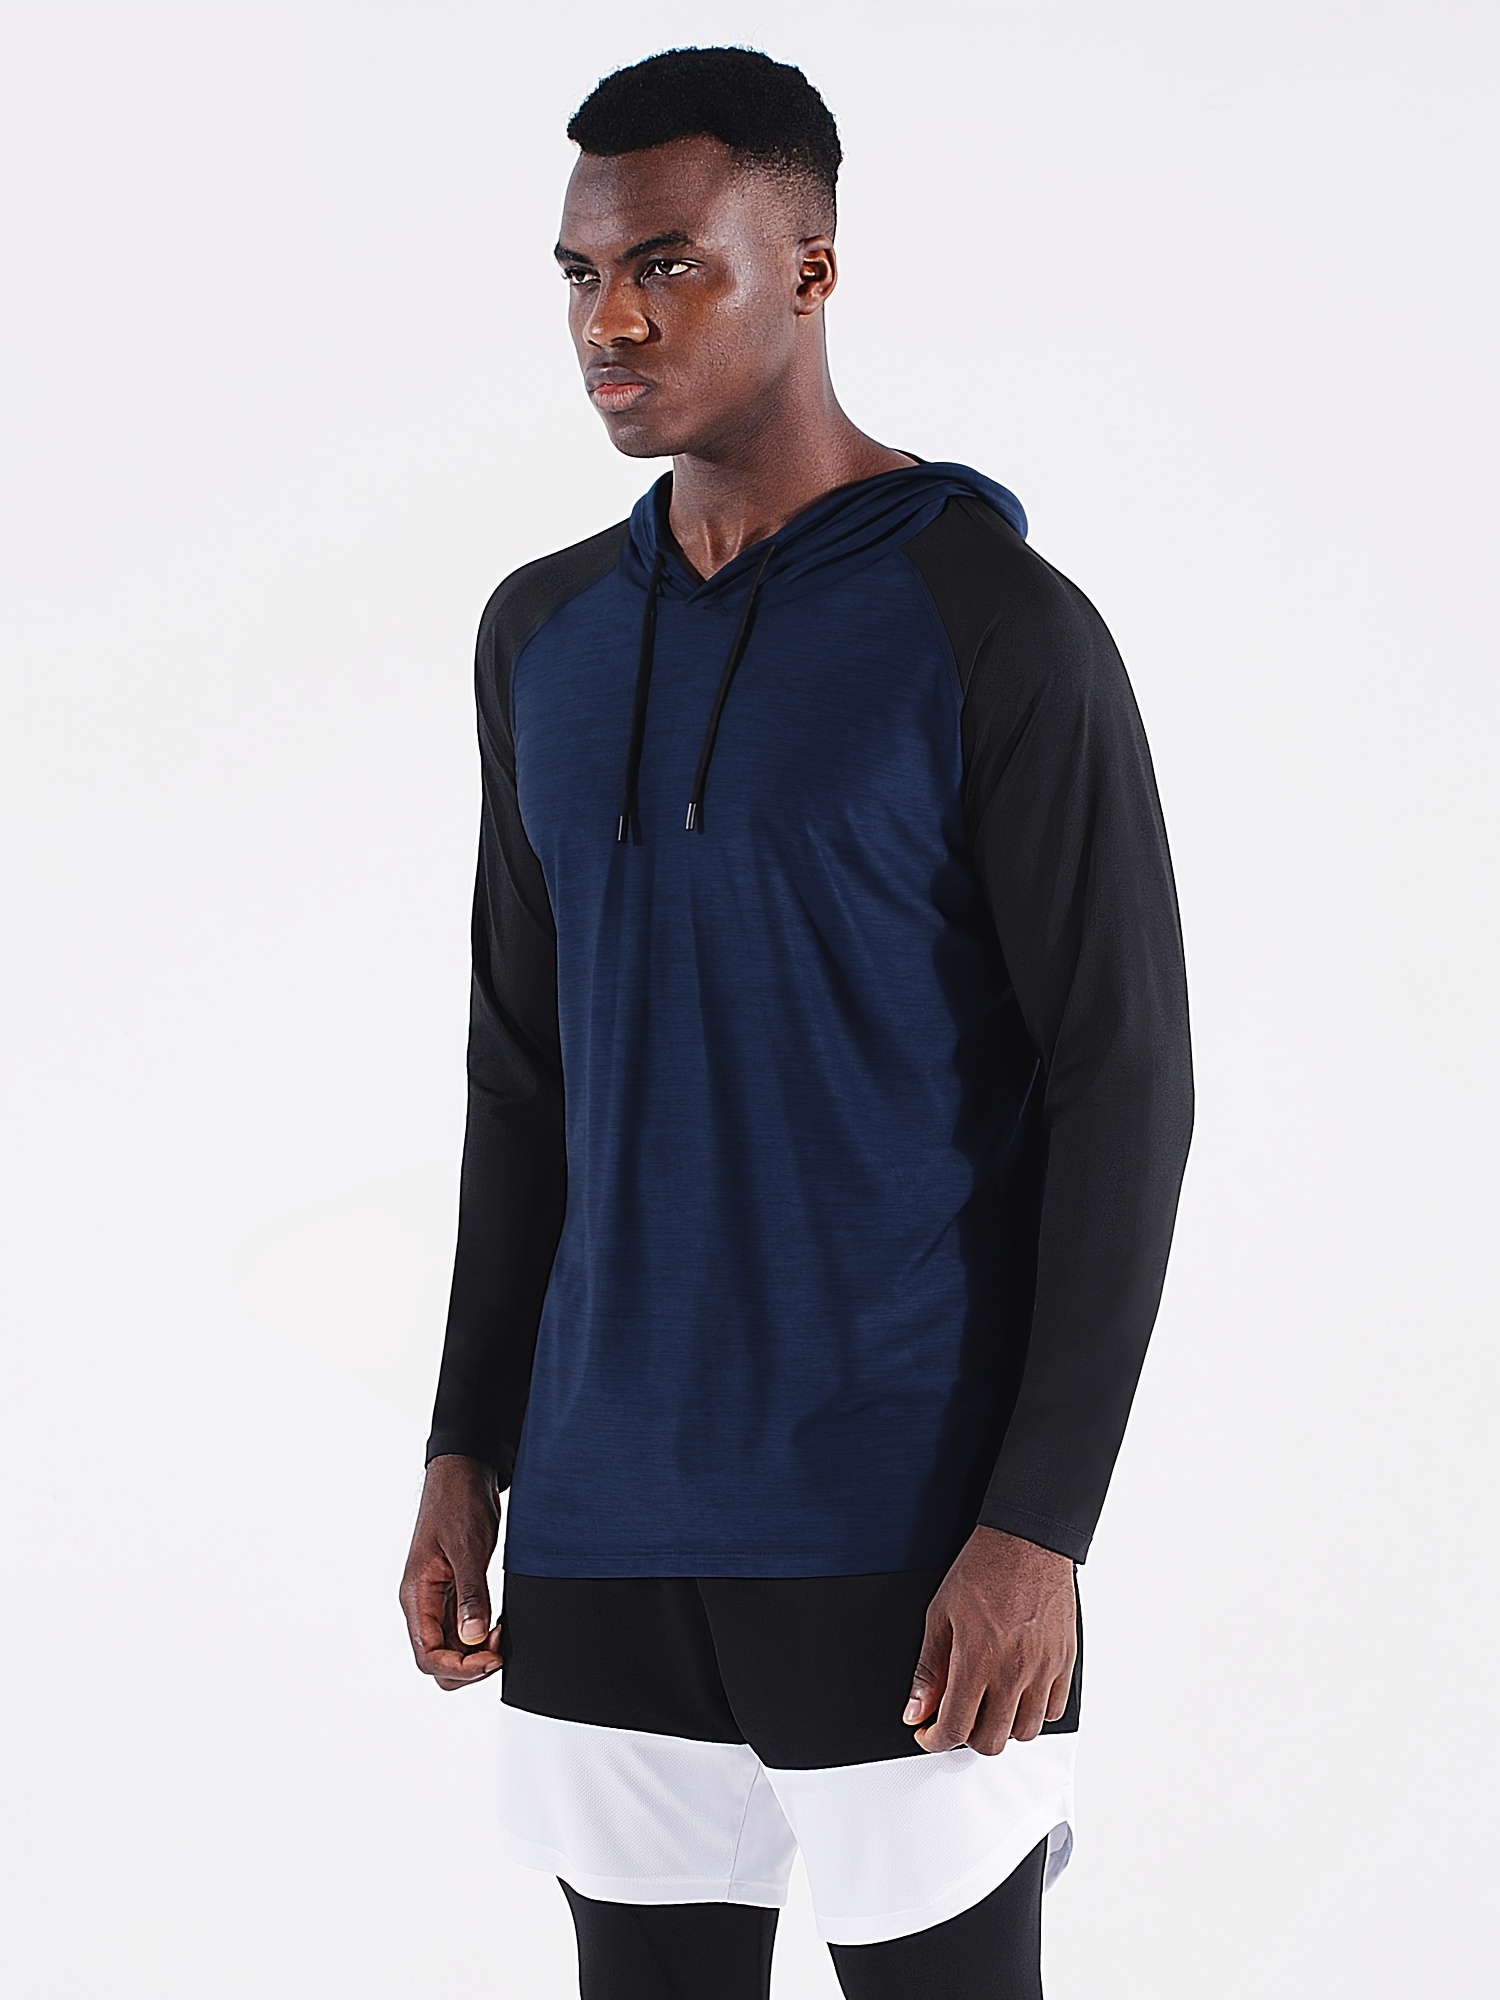 Colorblock Hooded Long Sleeve Sportswear, Men's Sportswear